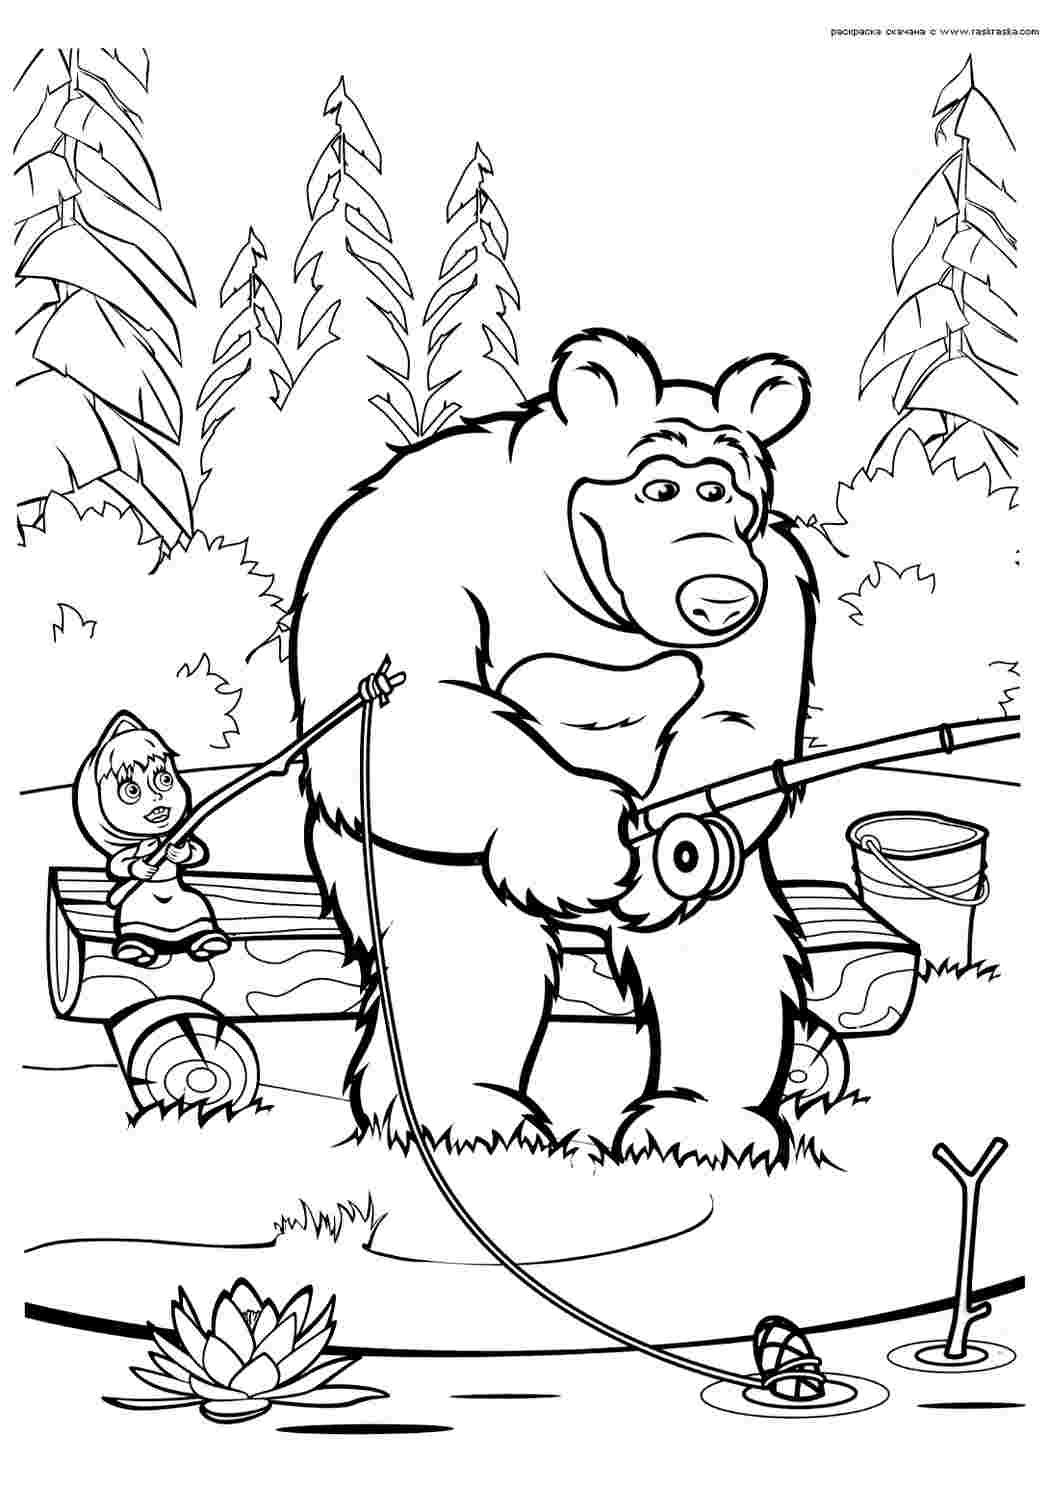 Мужик и медведь. Раскраска (729)